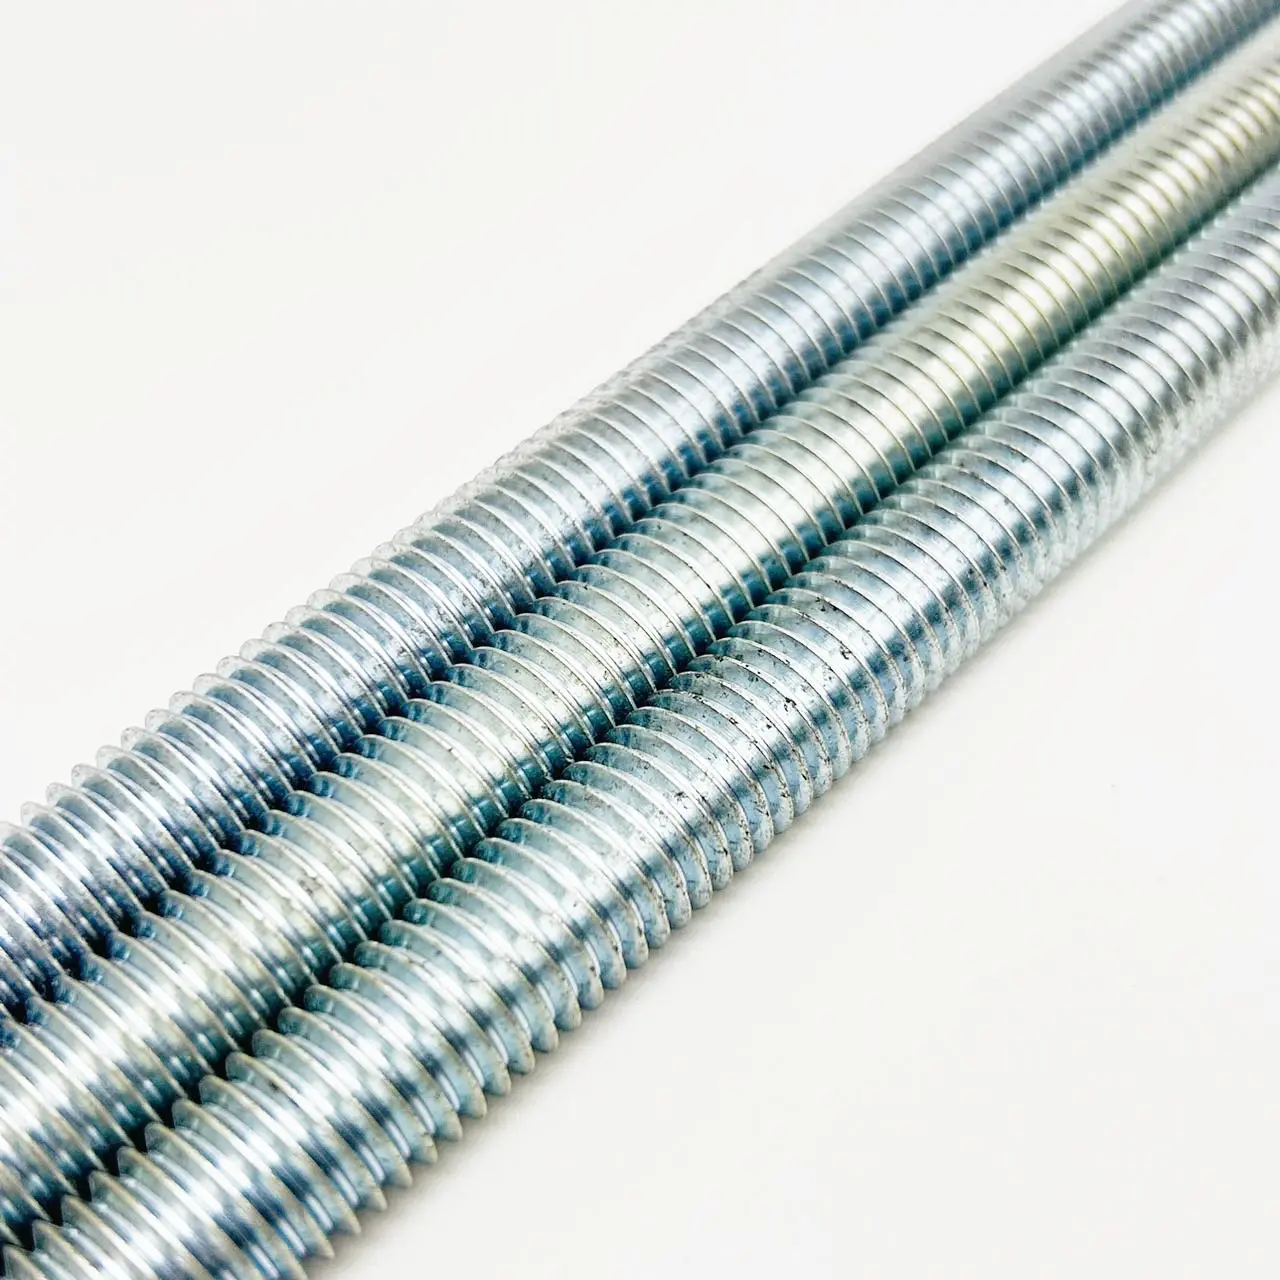 Threaded rod 7/8" x 10 Feet - Zinc Plated ASTM A307